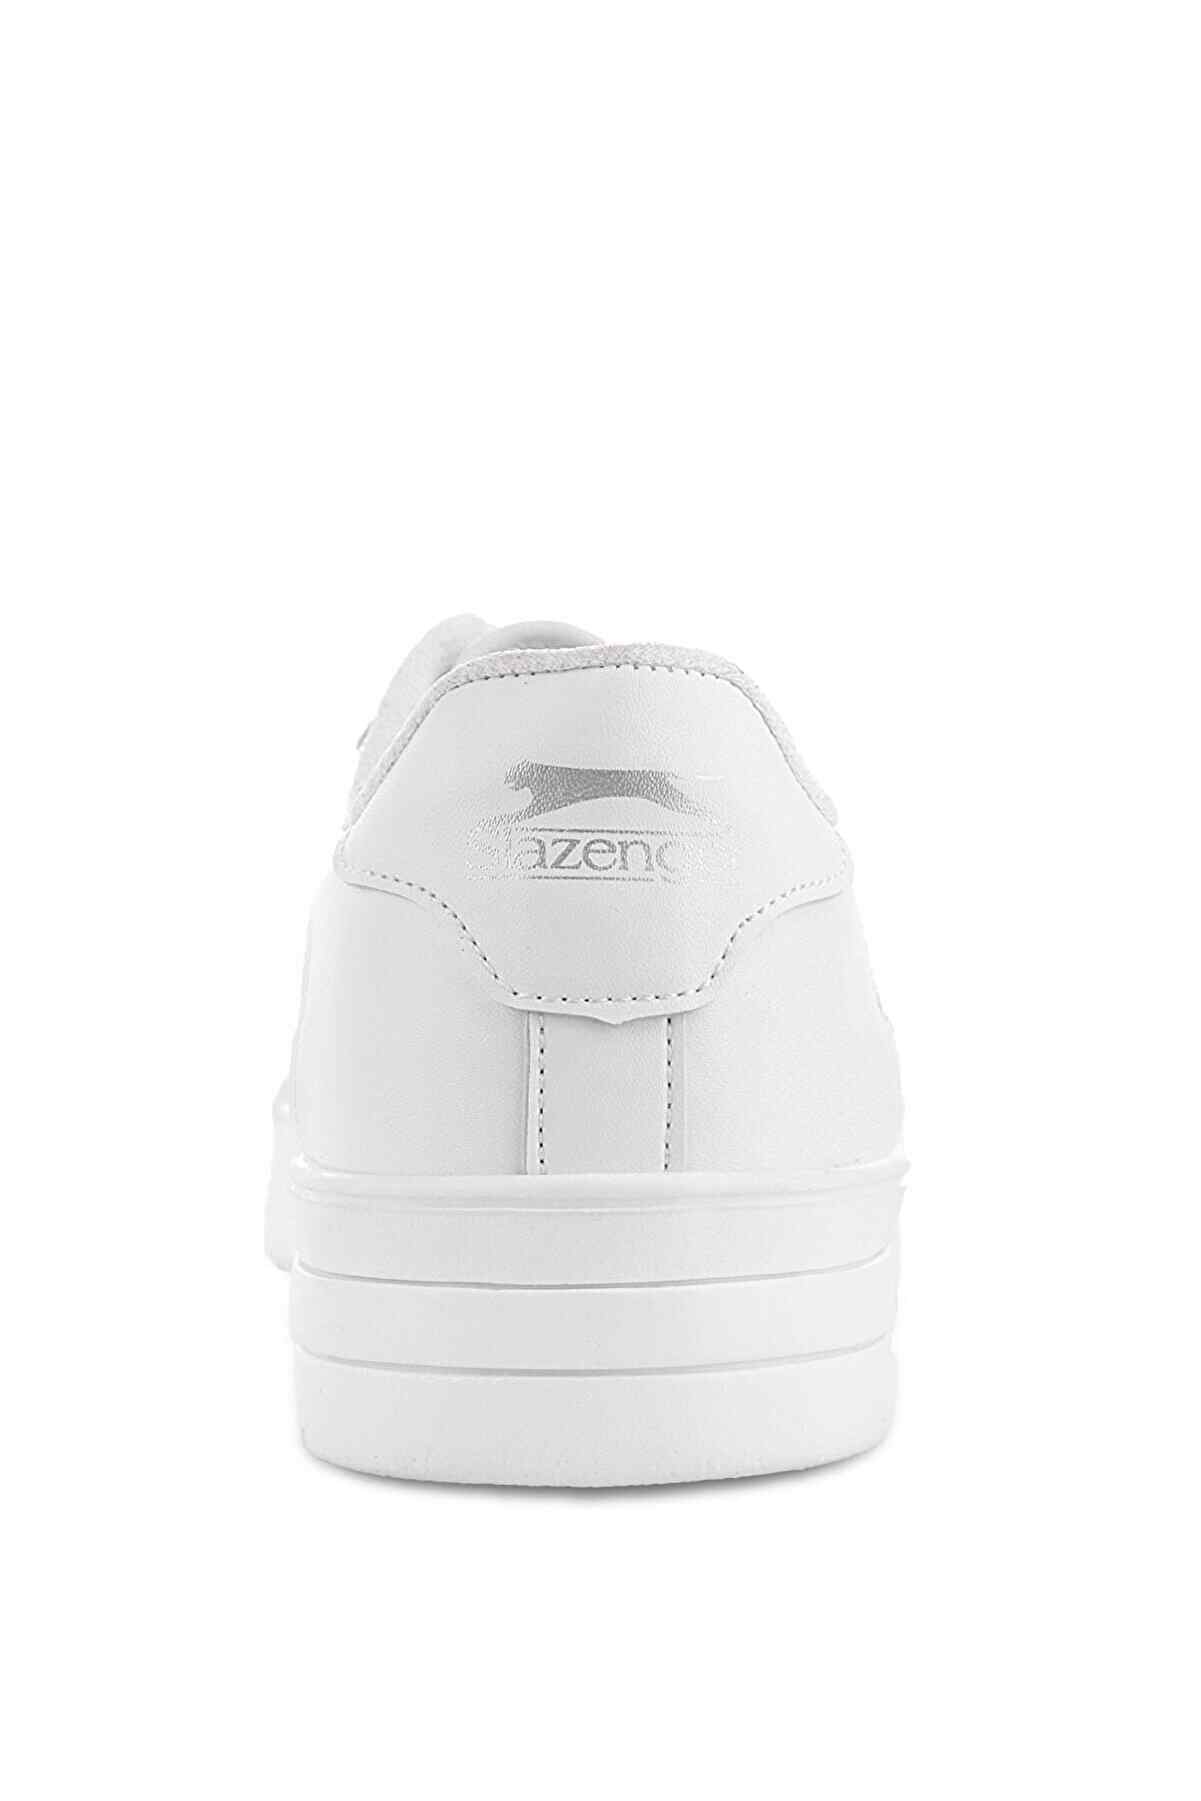 Slazenger Camp Sneaker Erkek Ayakkabı Beyaz